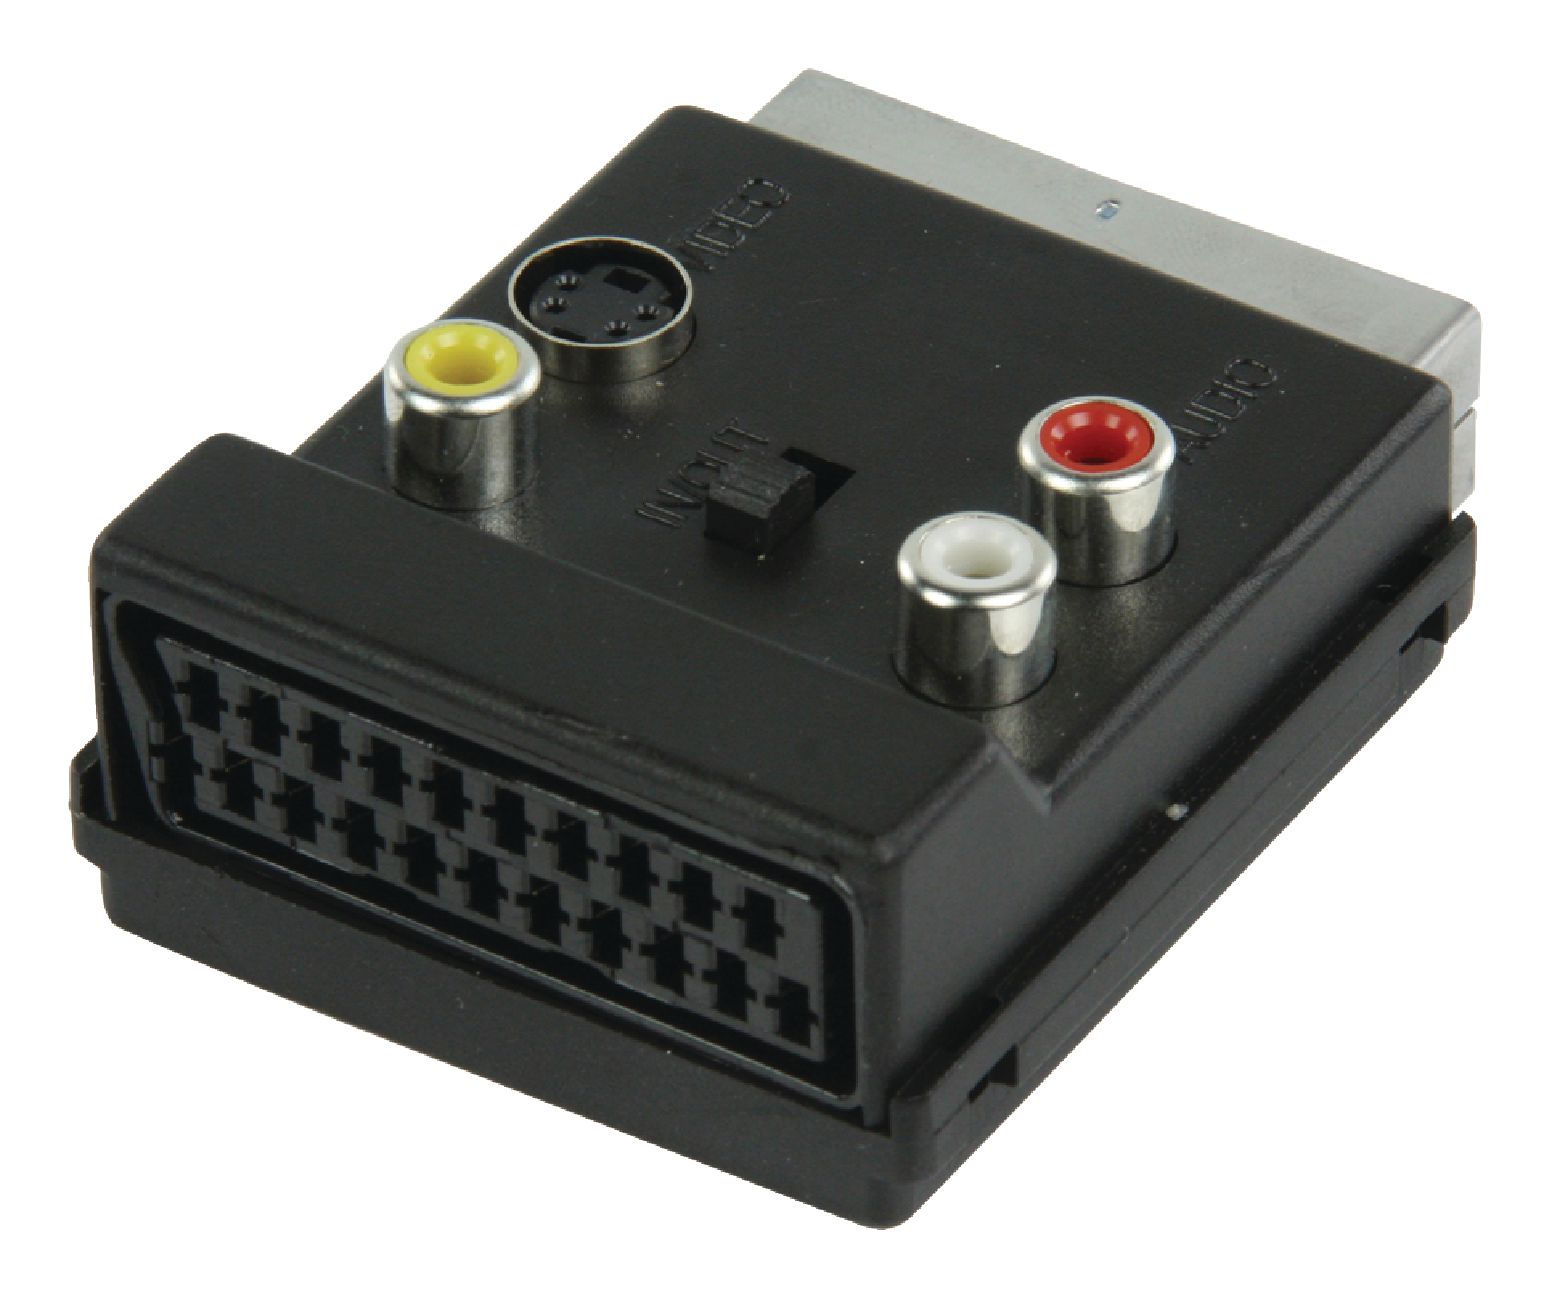 Connecteur Prise Peritel Femelle vers Port HDMI Mâle pour téléviseur  PANASONIC UNIQUEMENT - F80500